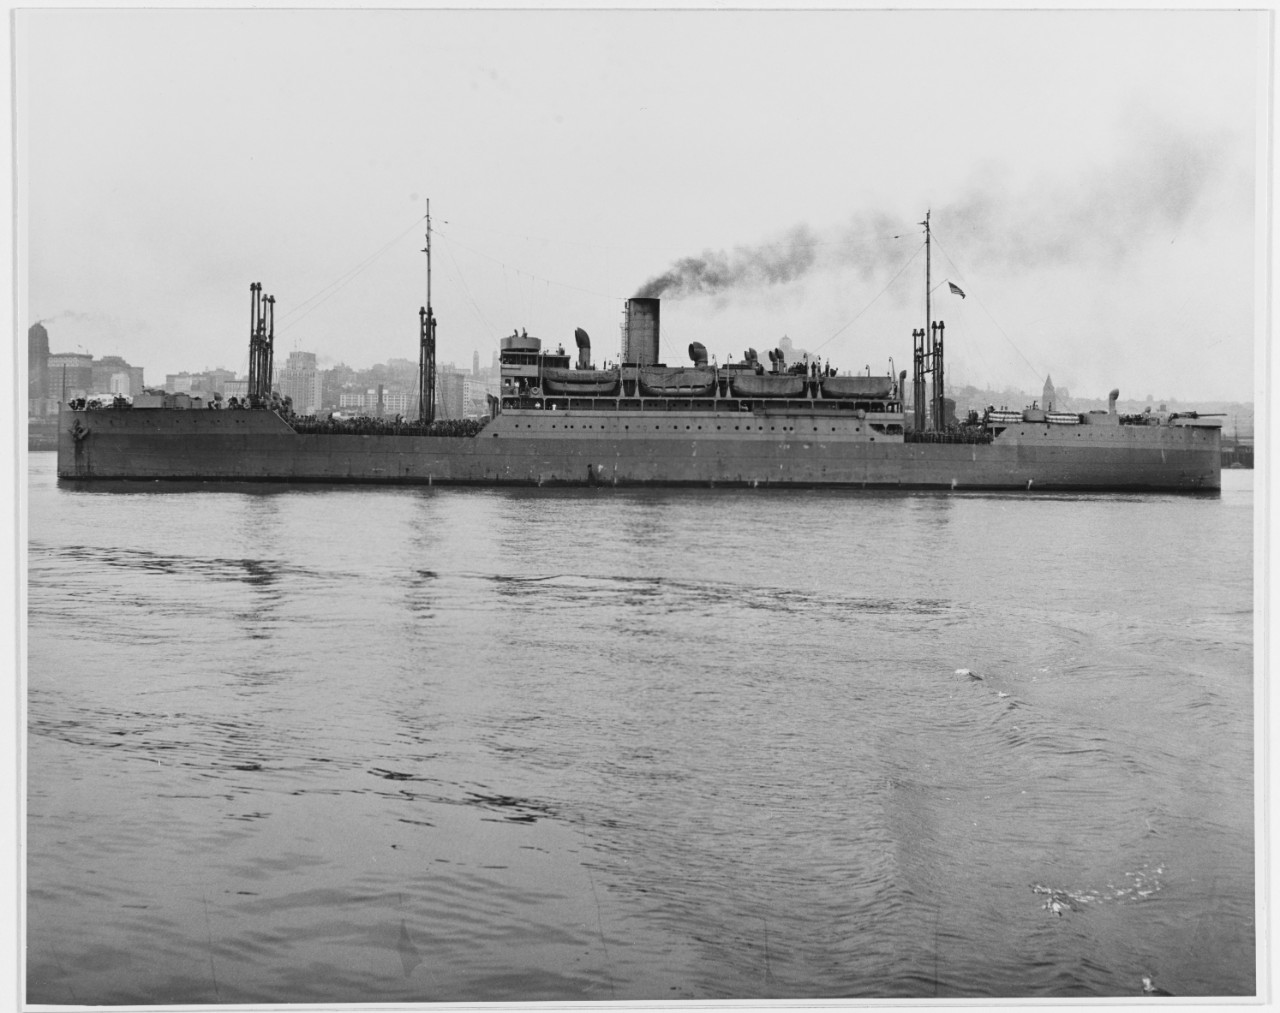 USS SAINT MIHIEL (AP-32), broadside view, port side